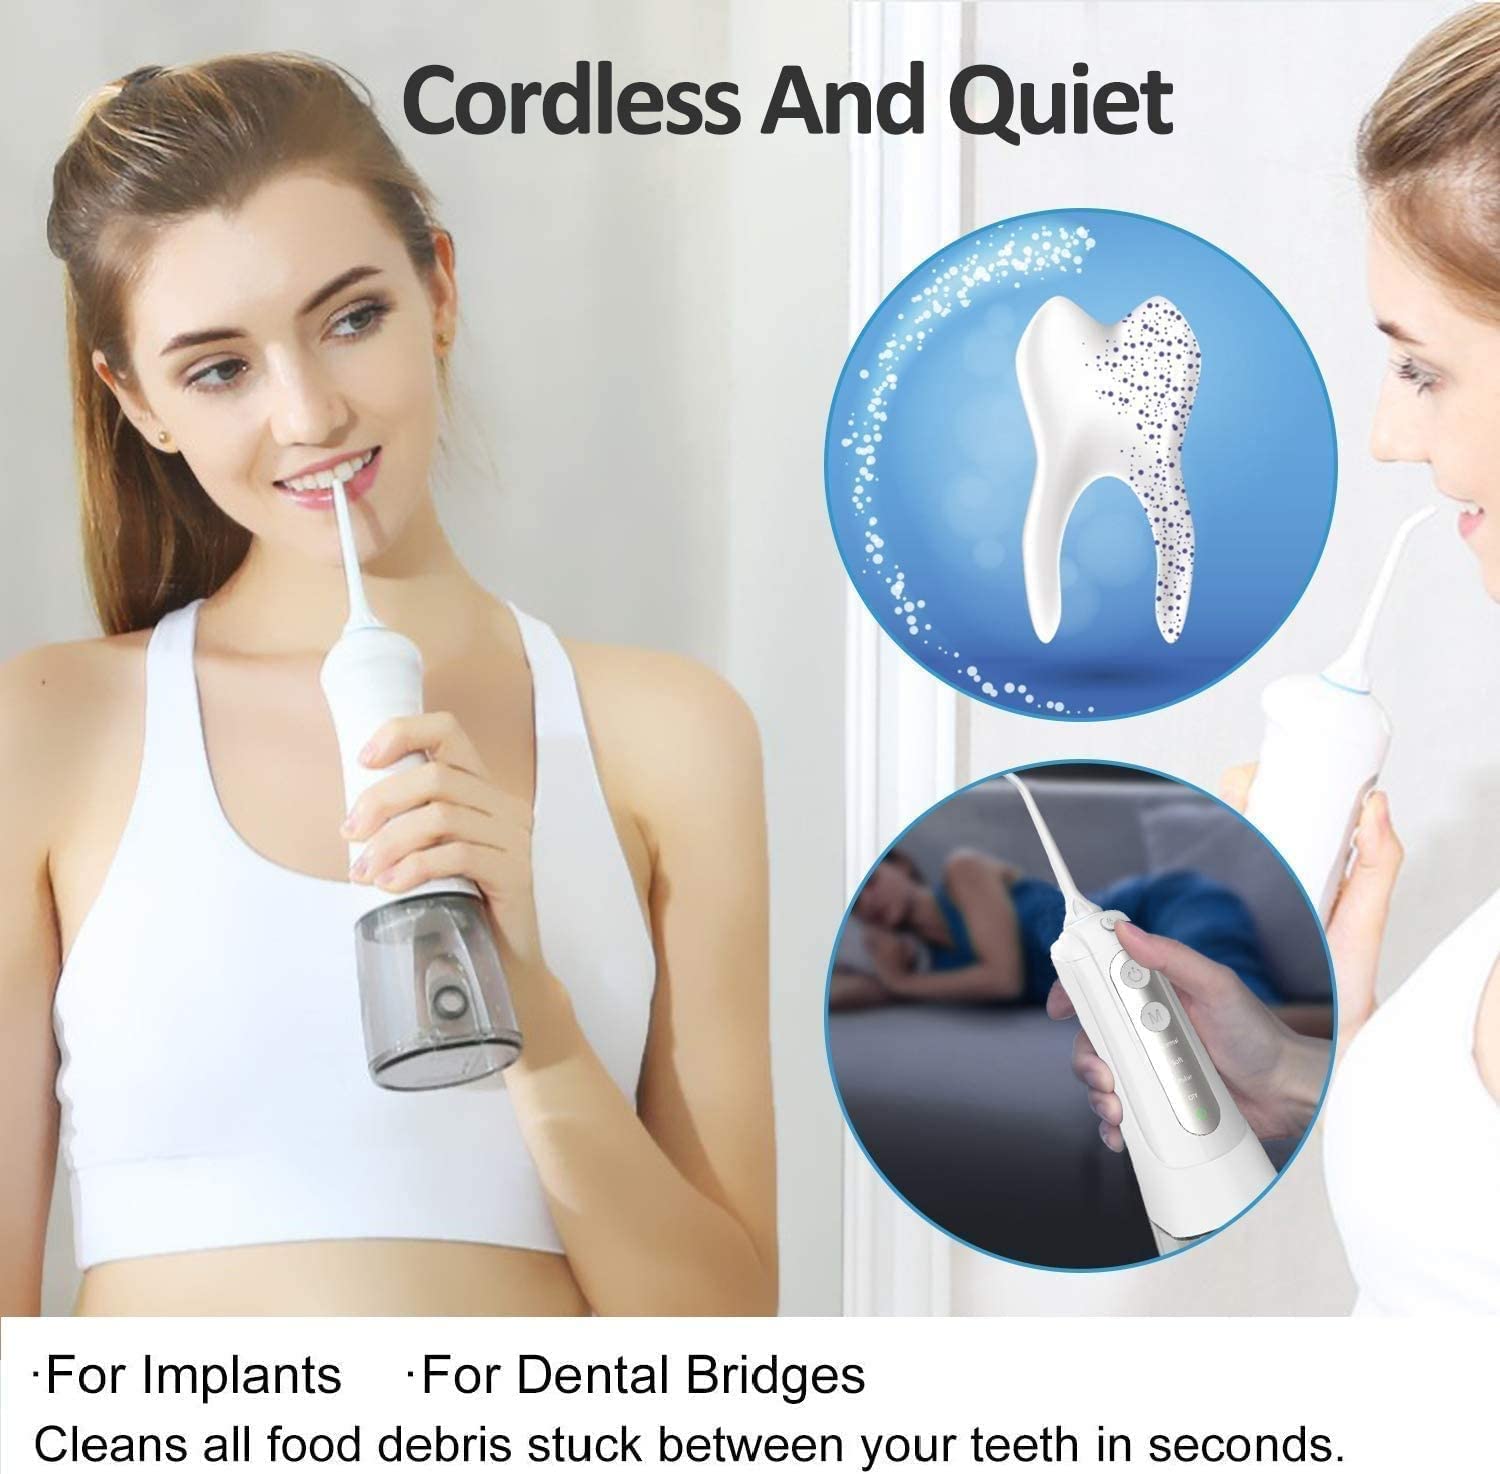 دستگاه شستشوی دهان و دندان Oral Irrigator Cordless Water Flosser Rechargeable - ارسال 20 الی 25 روز کاری